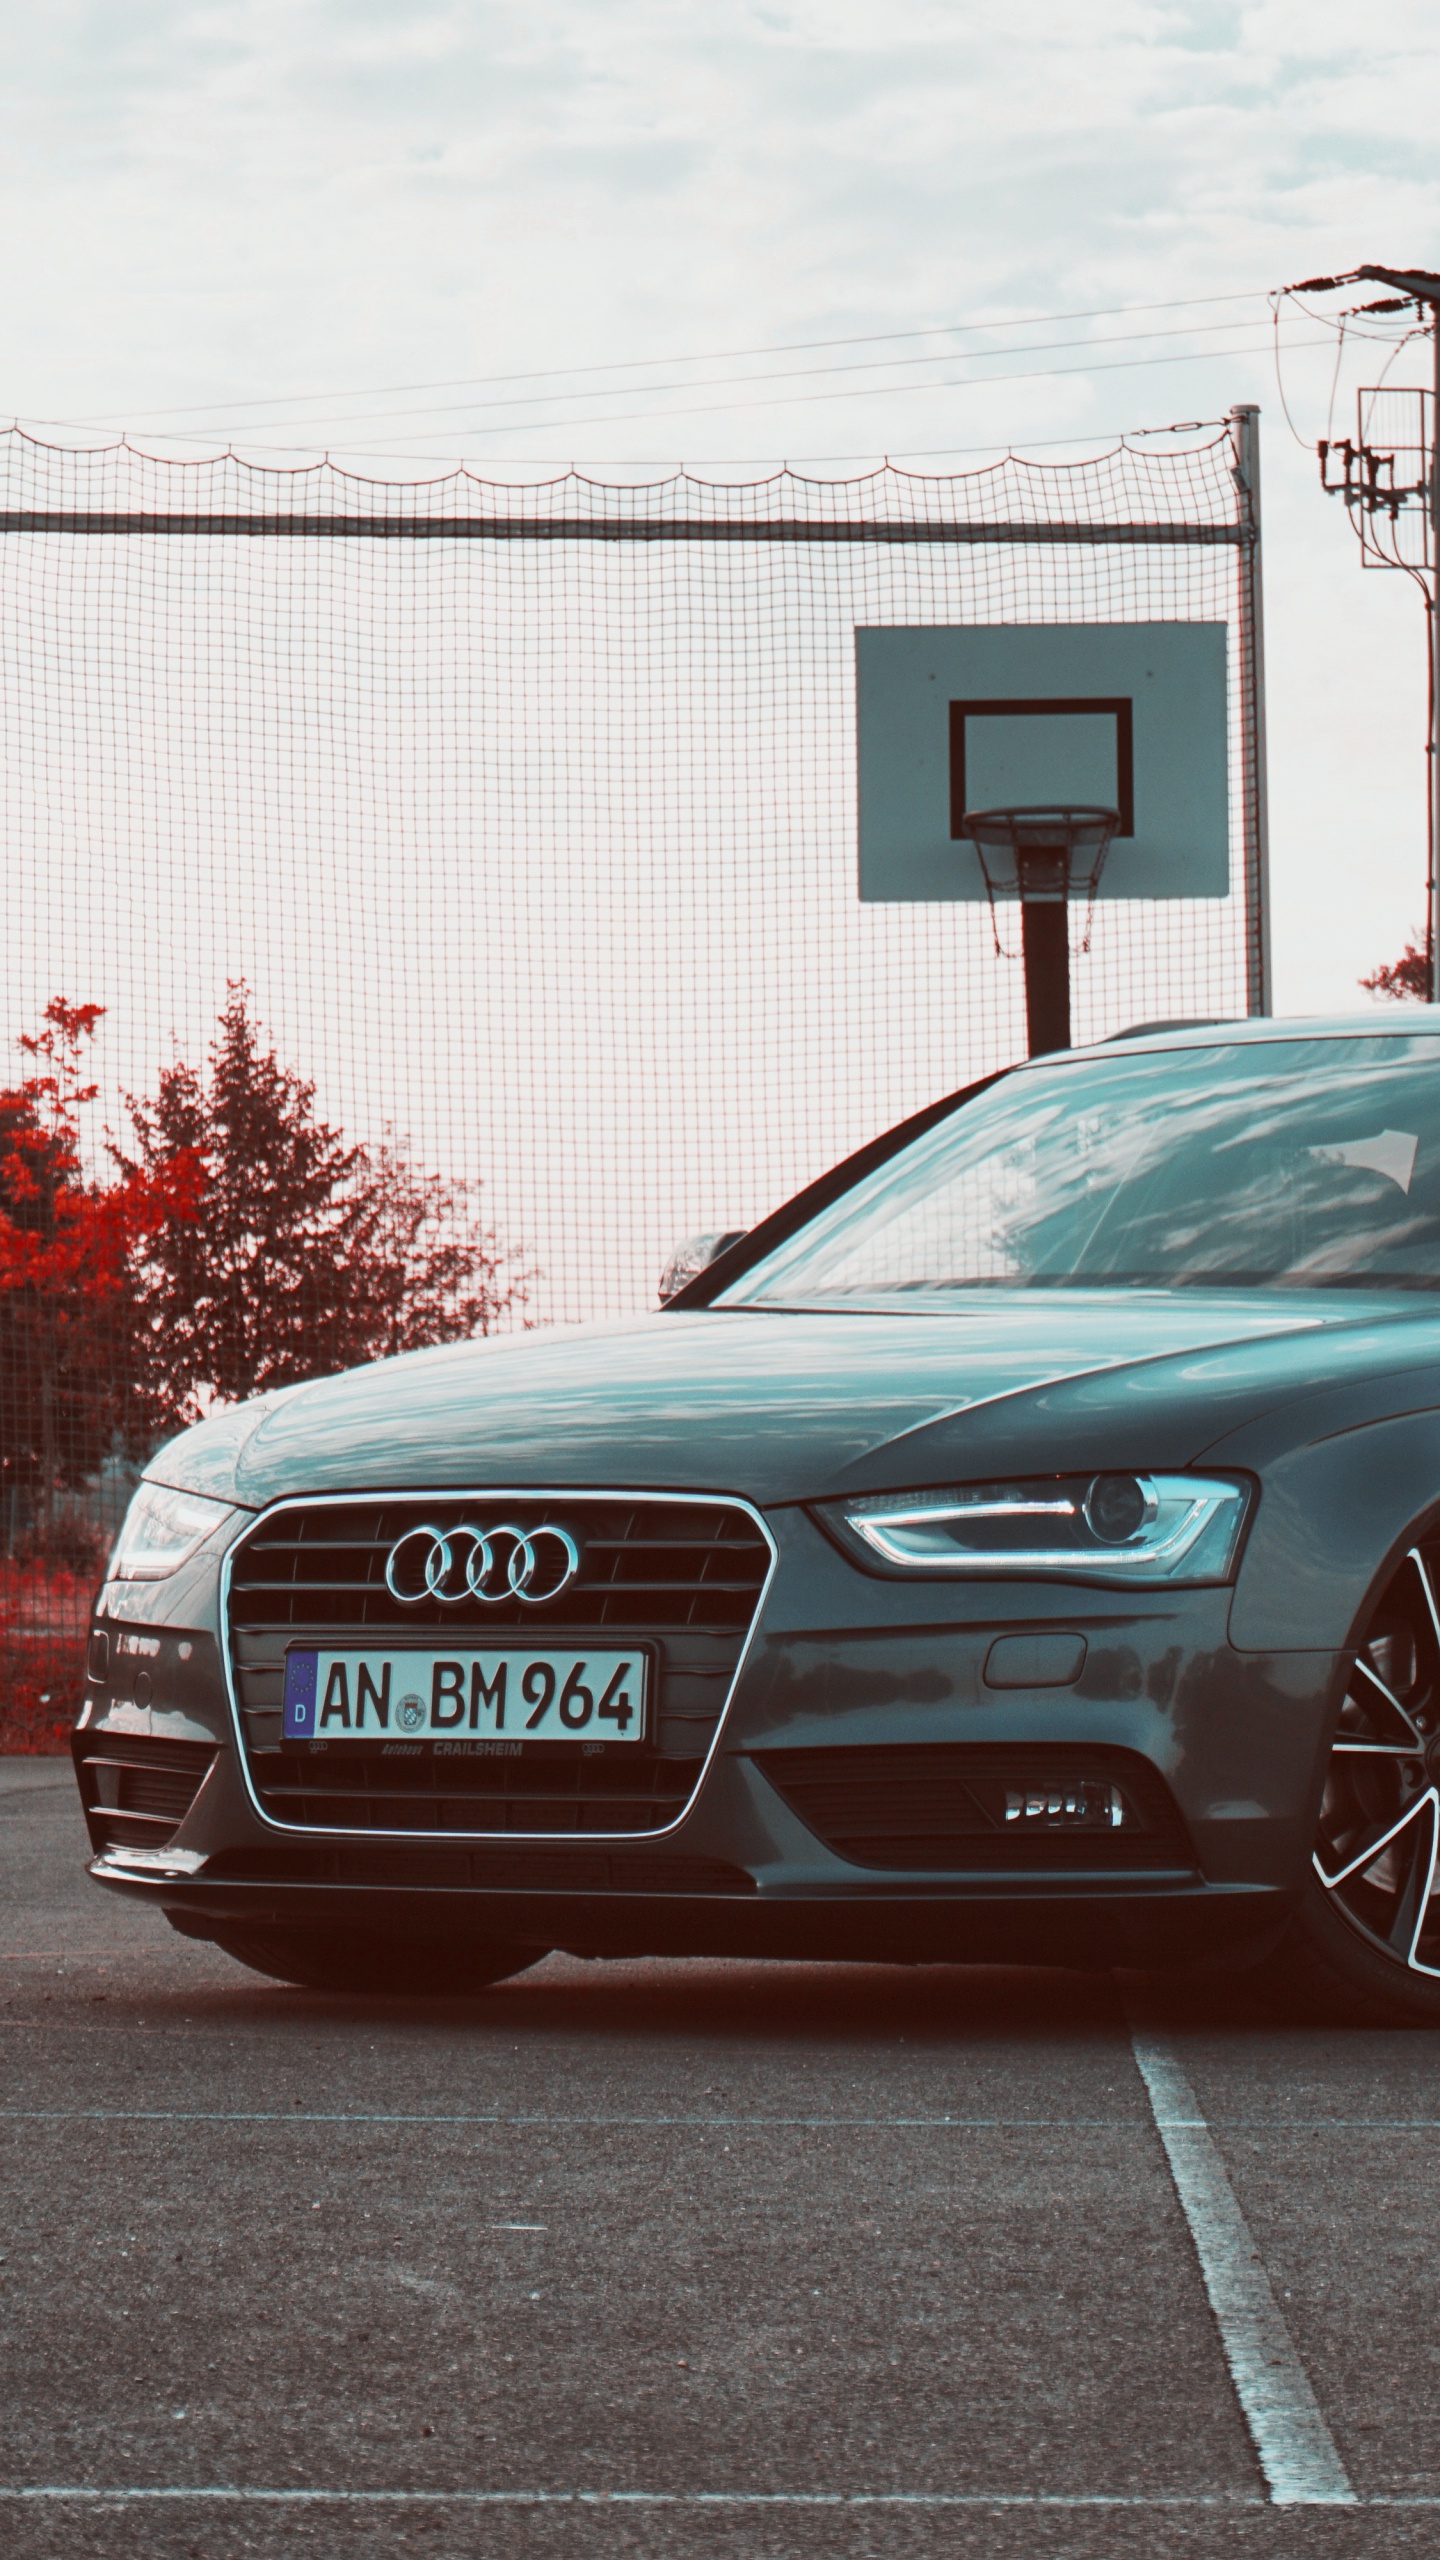 Berline Audi Noire Garée Sur Une Route en Béton Gris Pendant la Journée. Wallpaper in 1440x2560 Resolution